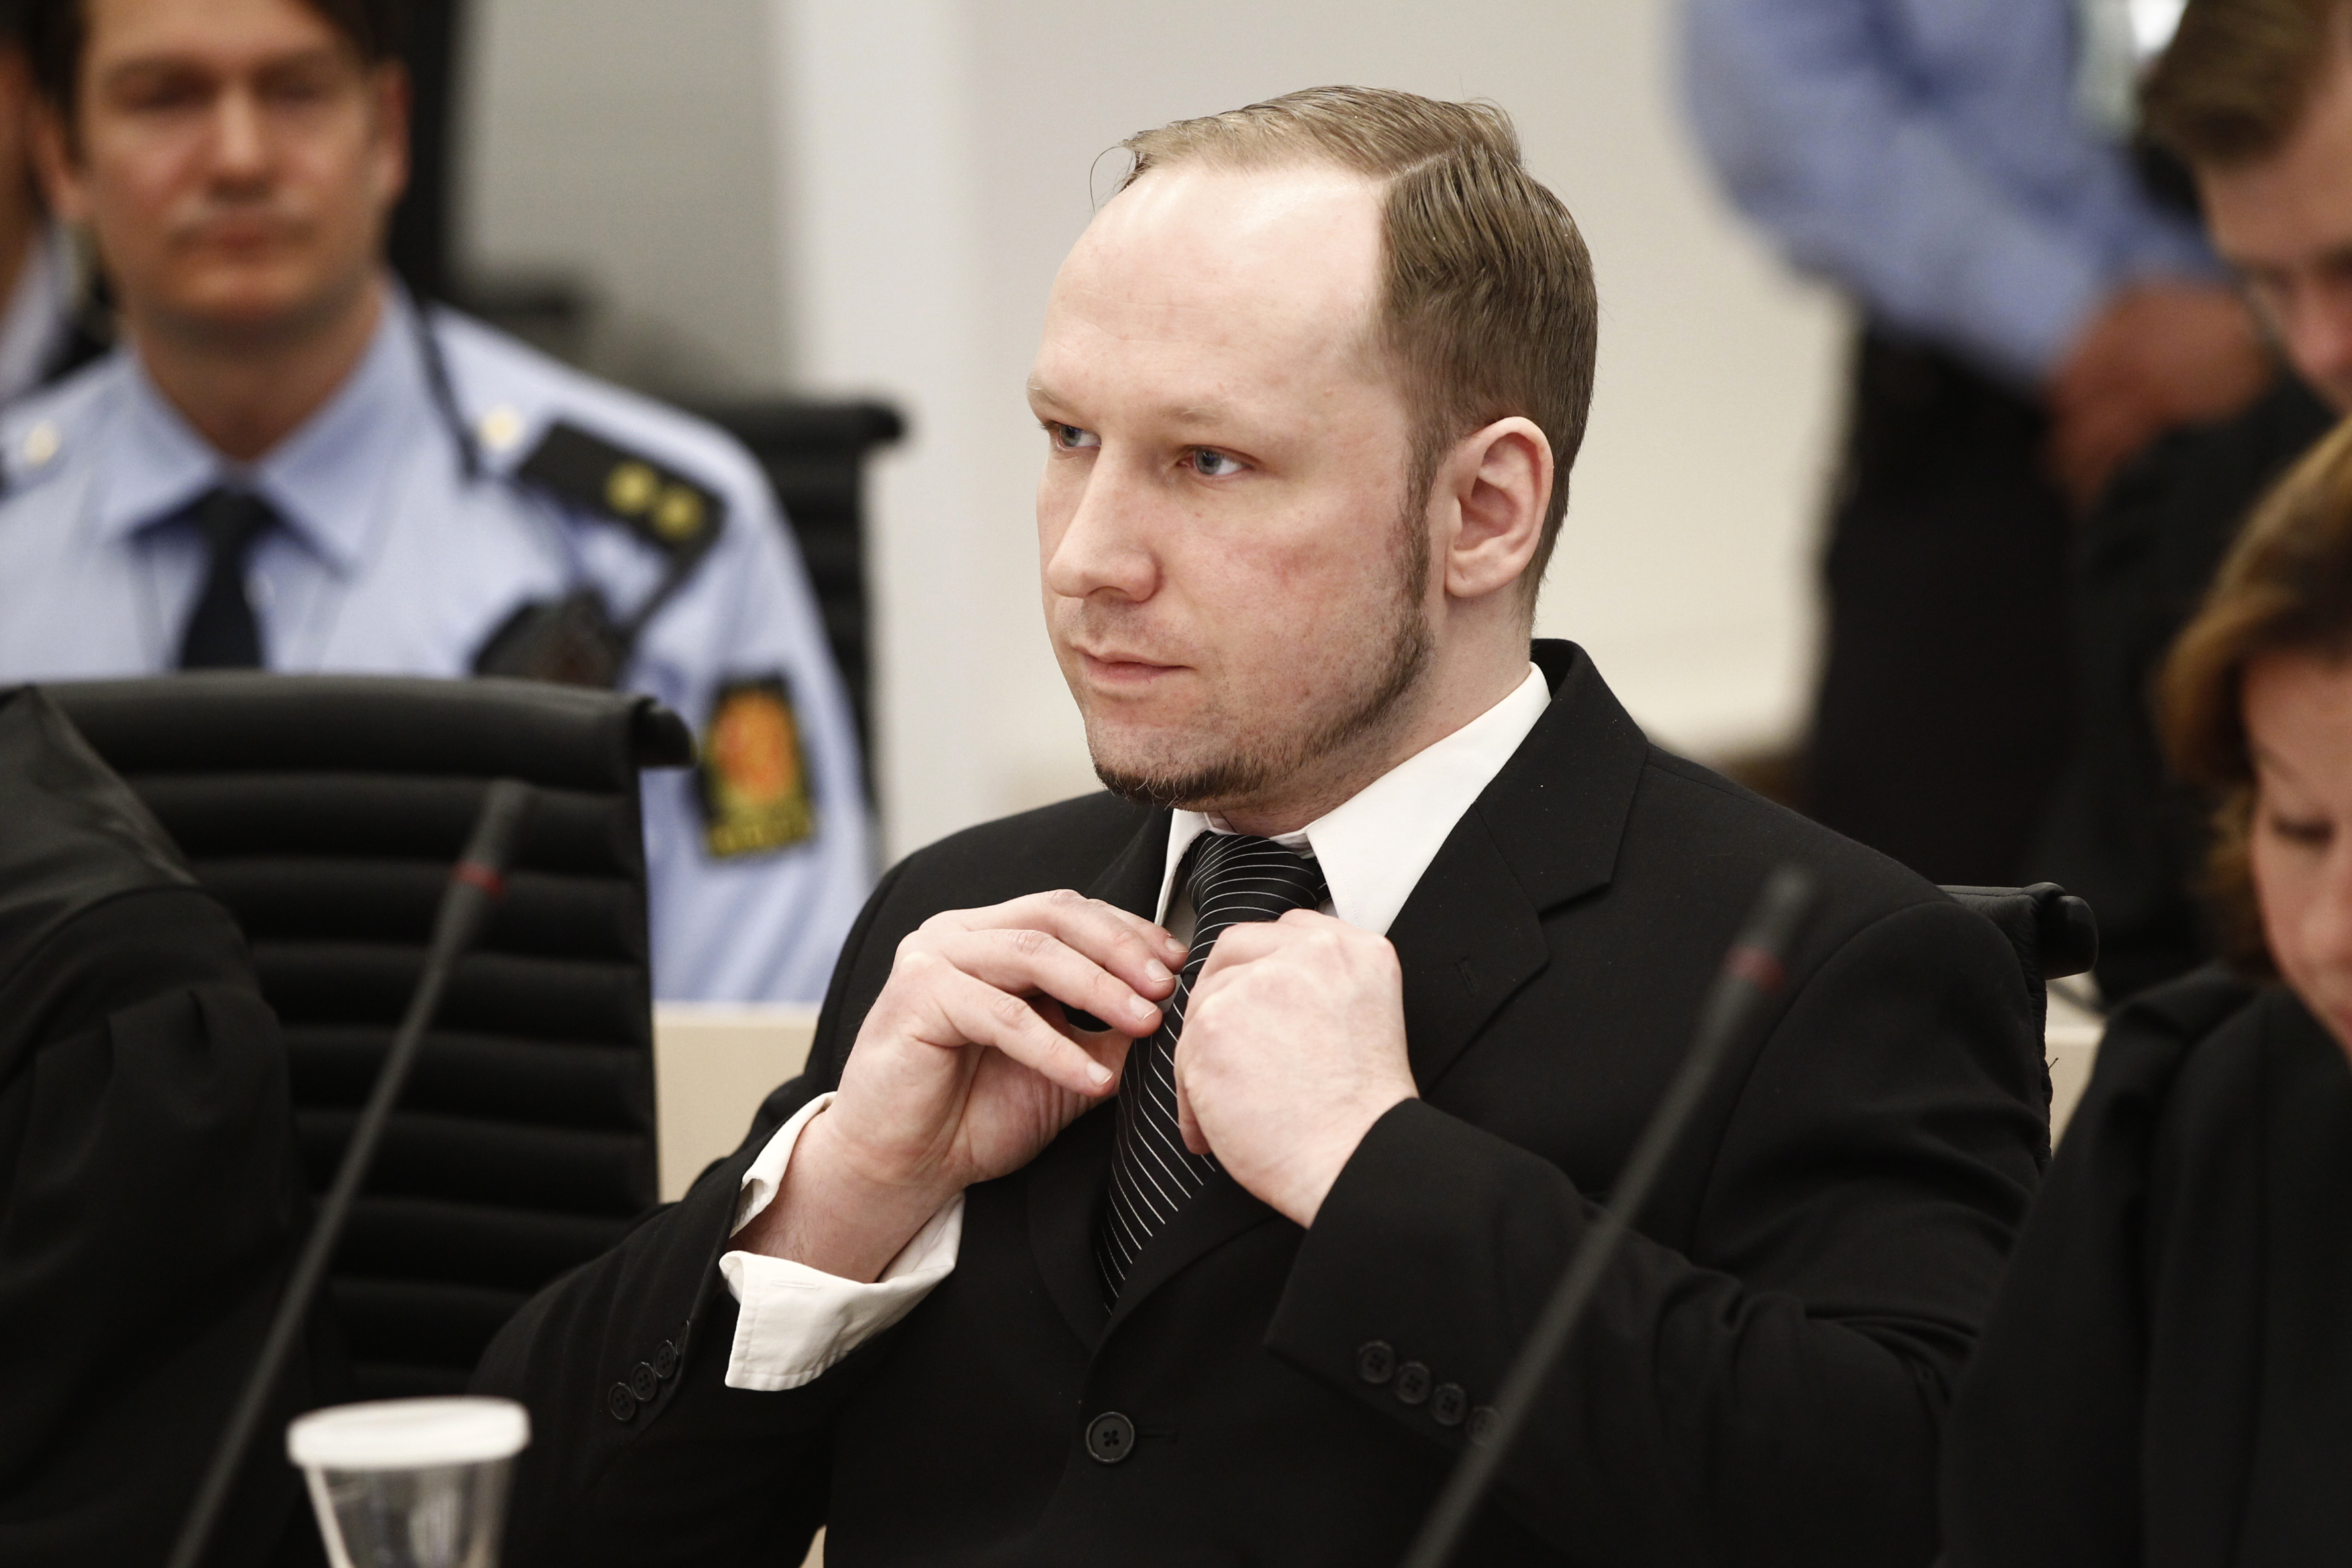 Bomb, Rättegång, Anders Behring Breivik, Norge, Brott och straff, Attack, Utøya, Terrordåd, Bombattentat, Skottlossning, Oslo